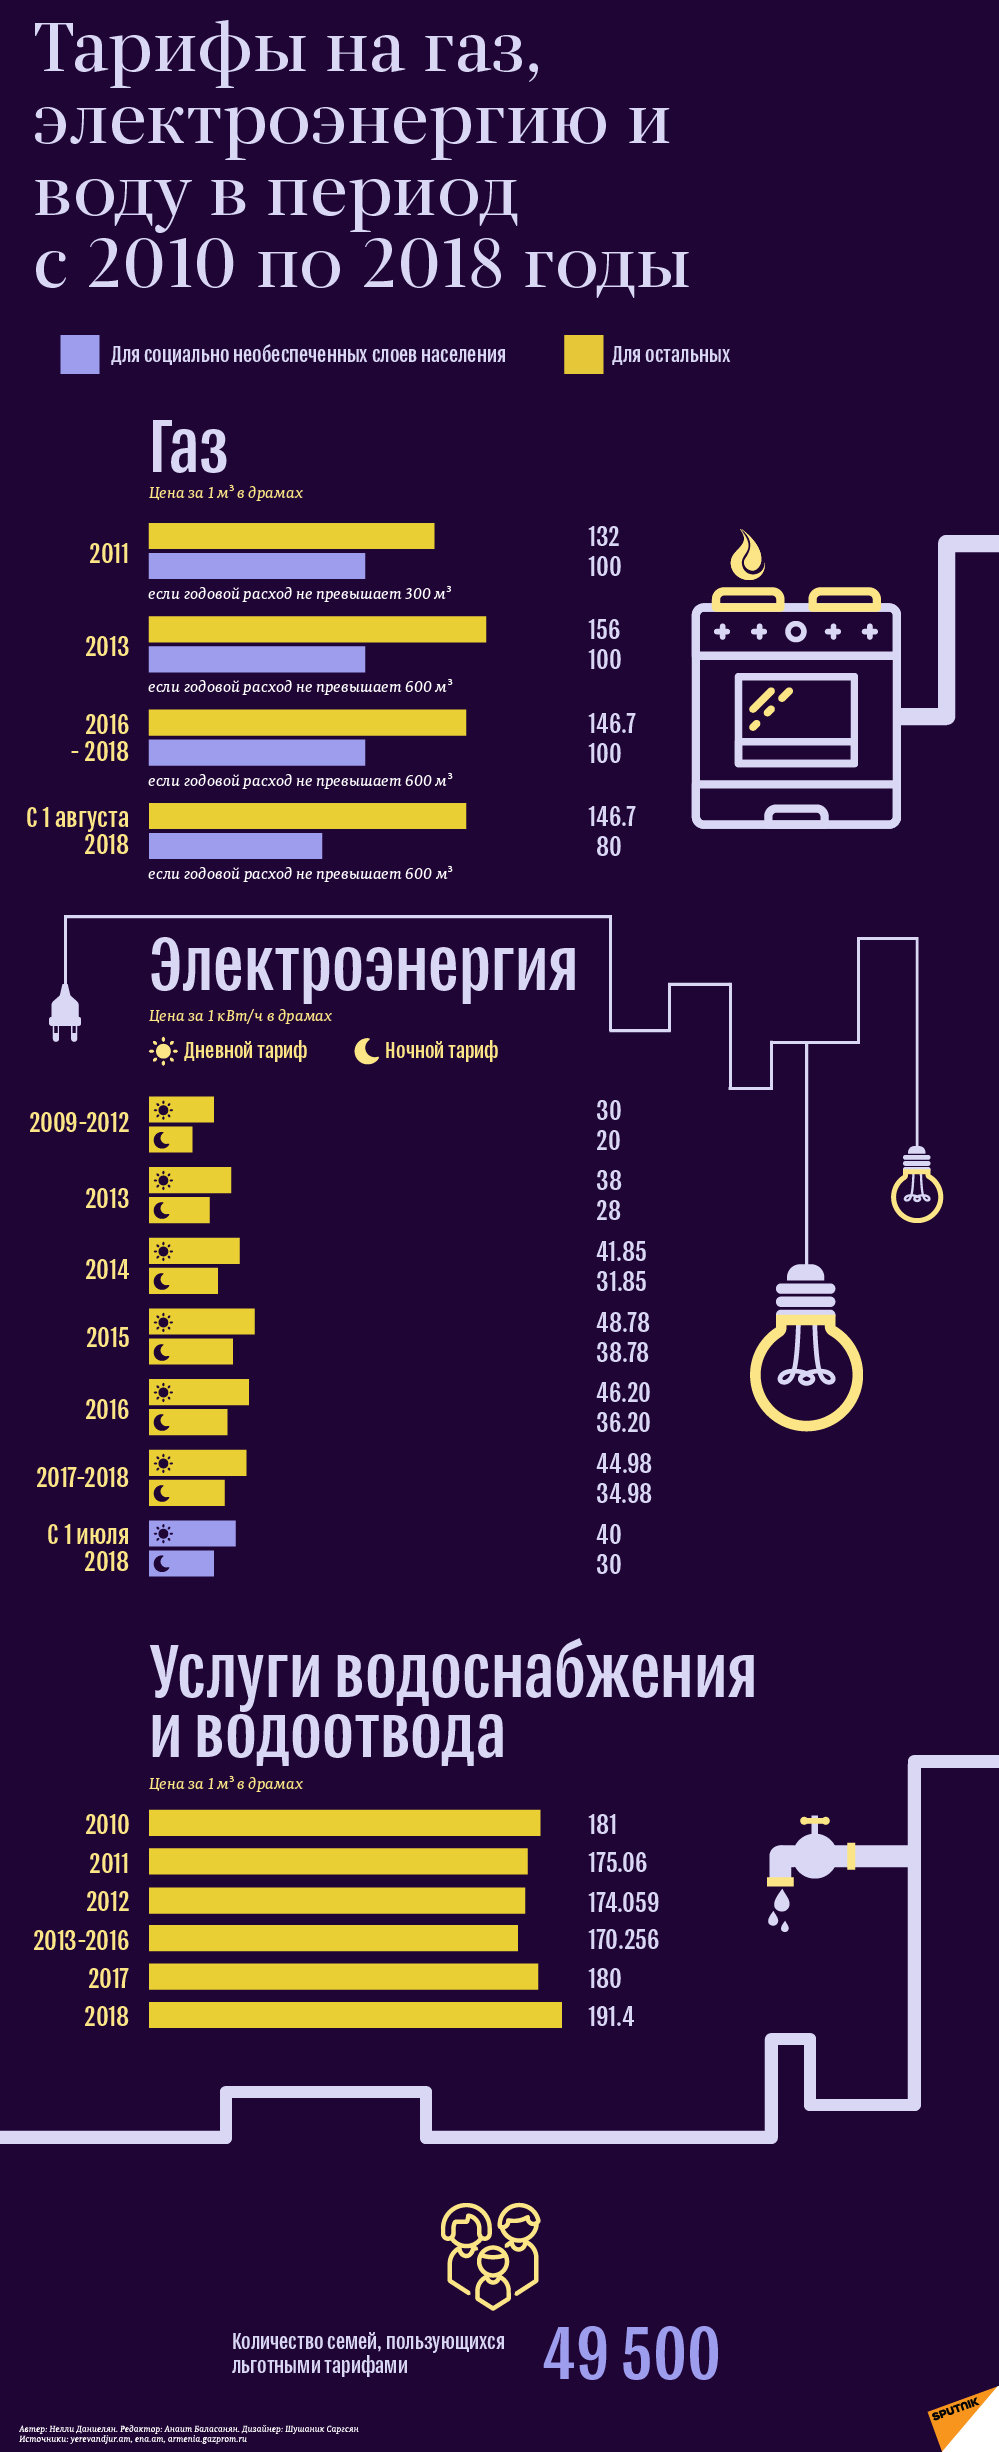 Тарифы на газ, электроэнергию и воду за 2010-2018 годы - Sputnik Армения